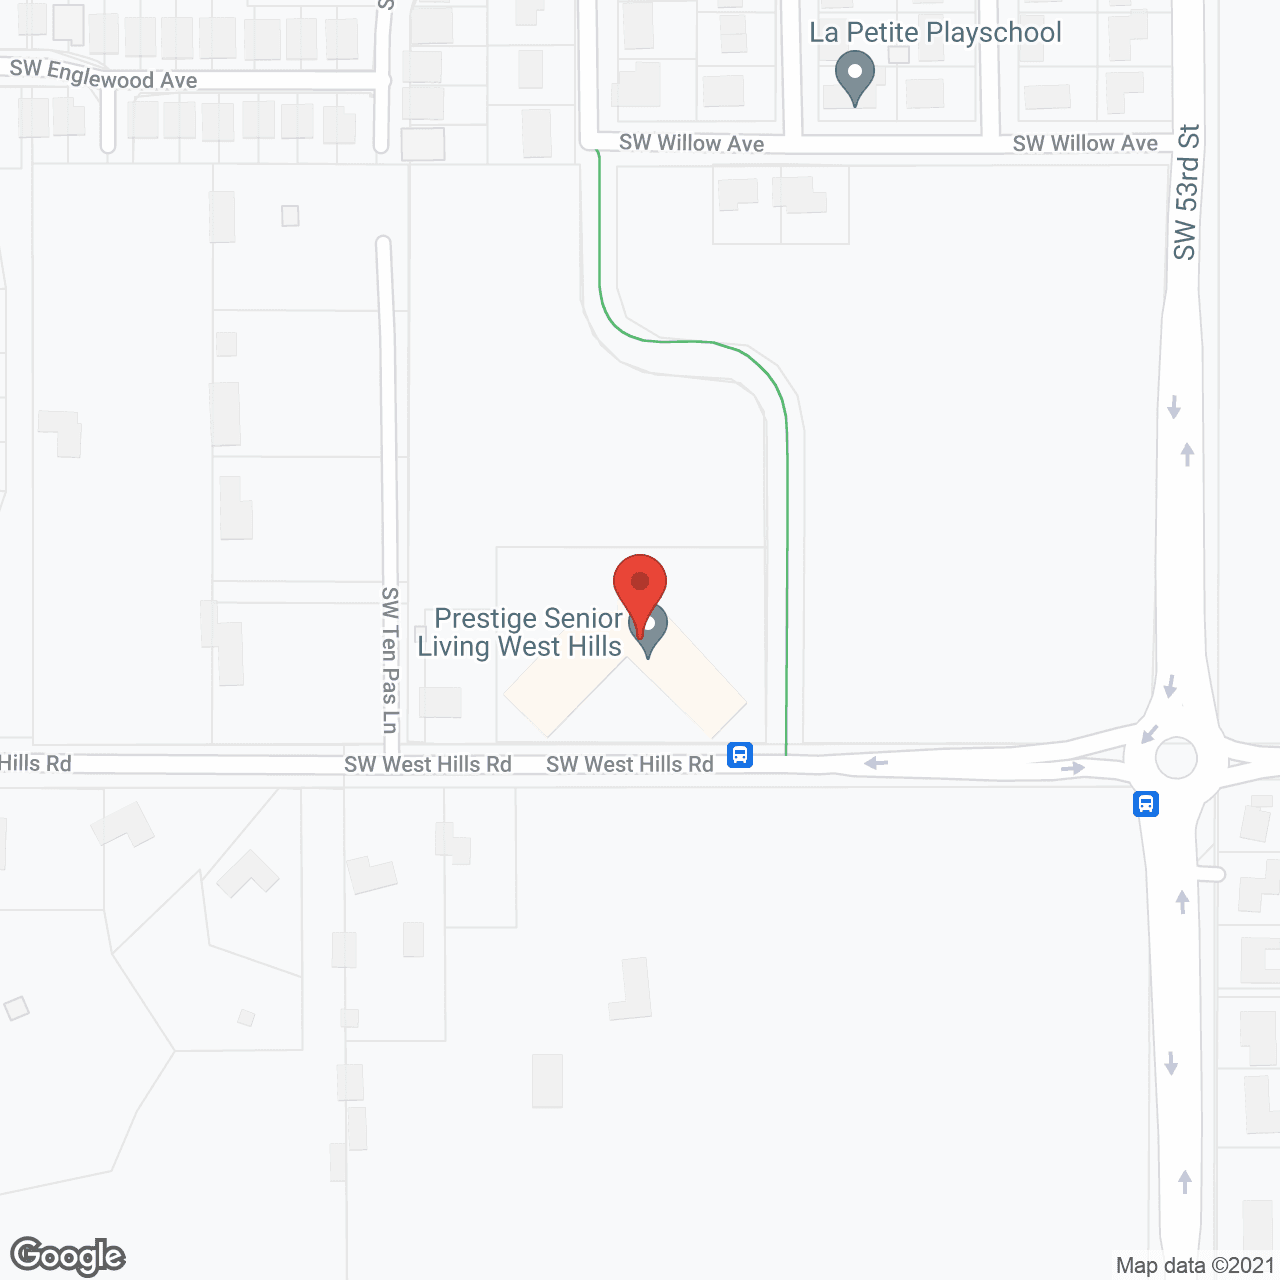 Prestige Senior Living West Hills in google map